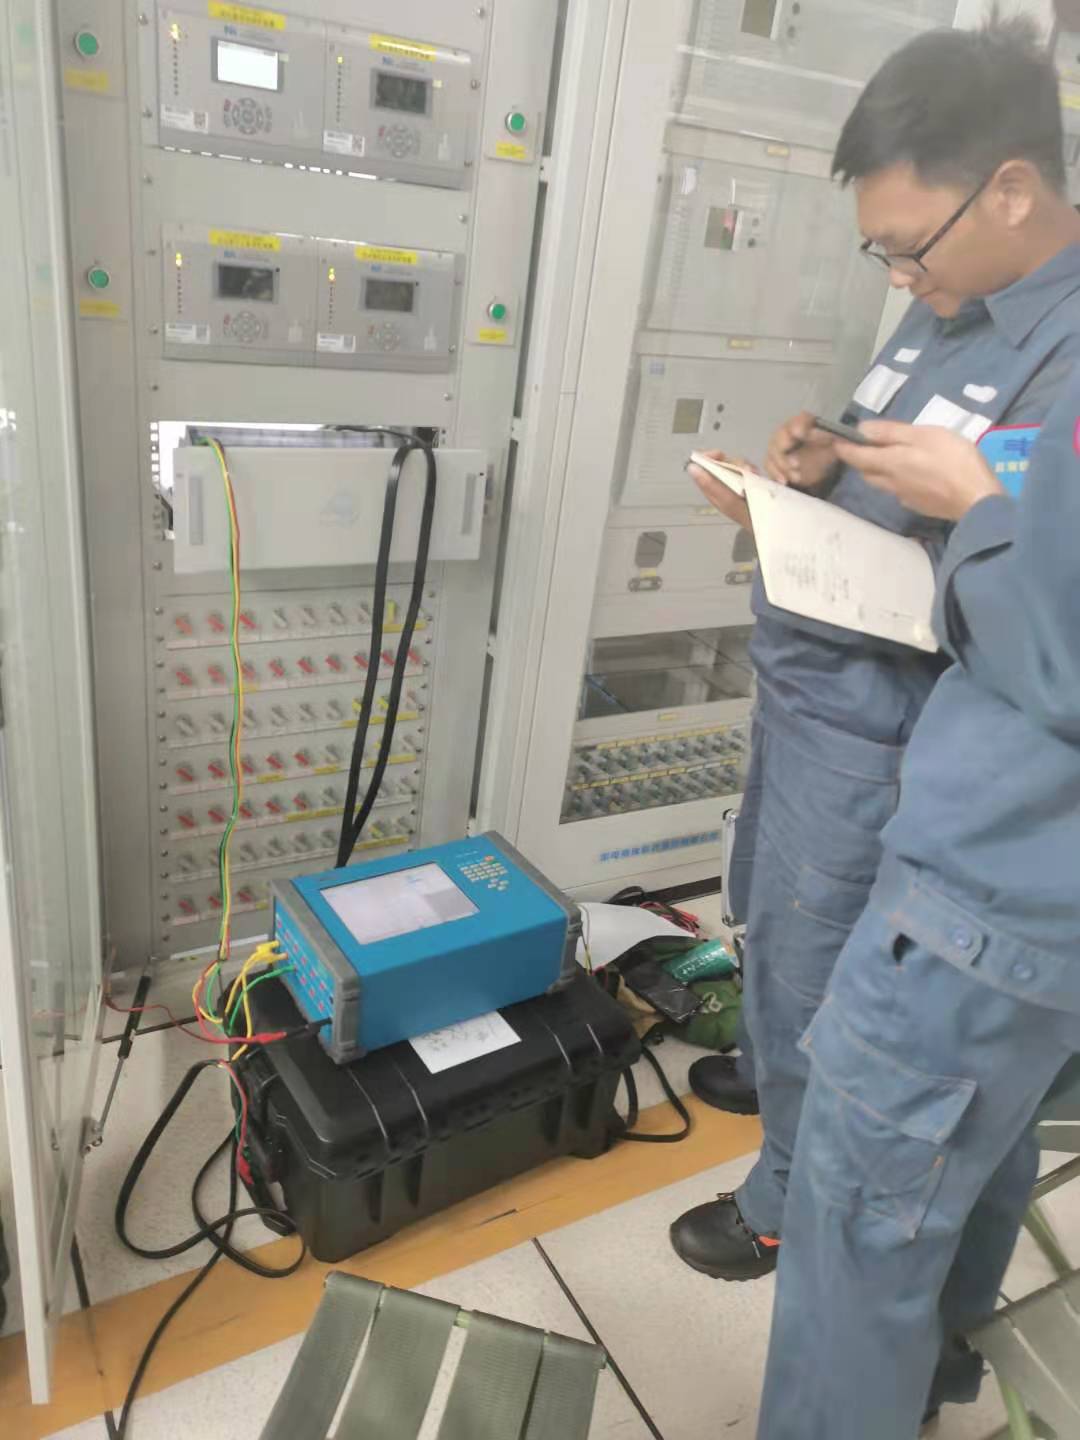 KF86 został wybrany jako jedyne narzędzie do testowania i uruchamiania przez prowincję CSG Yunnan